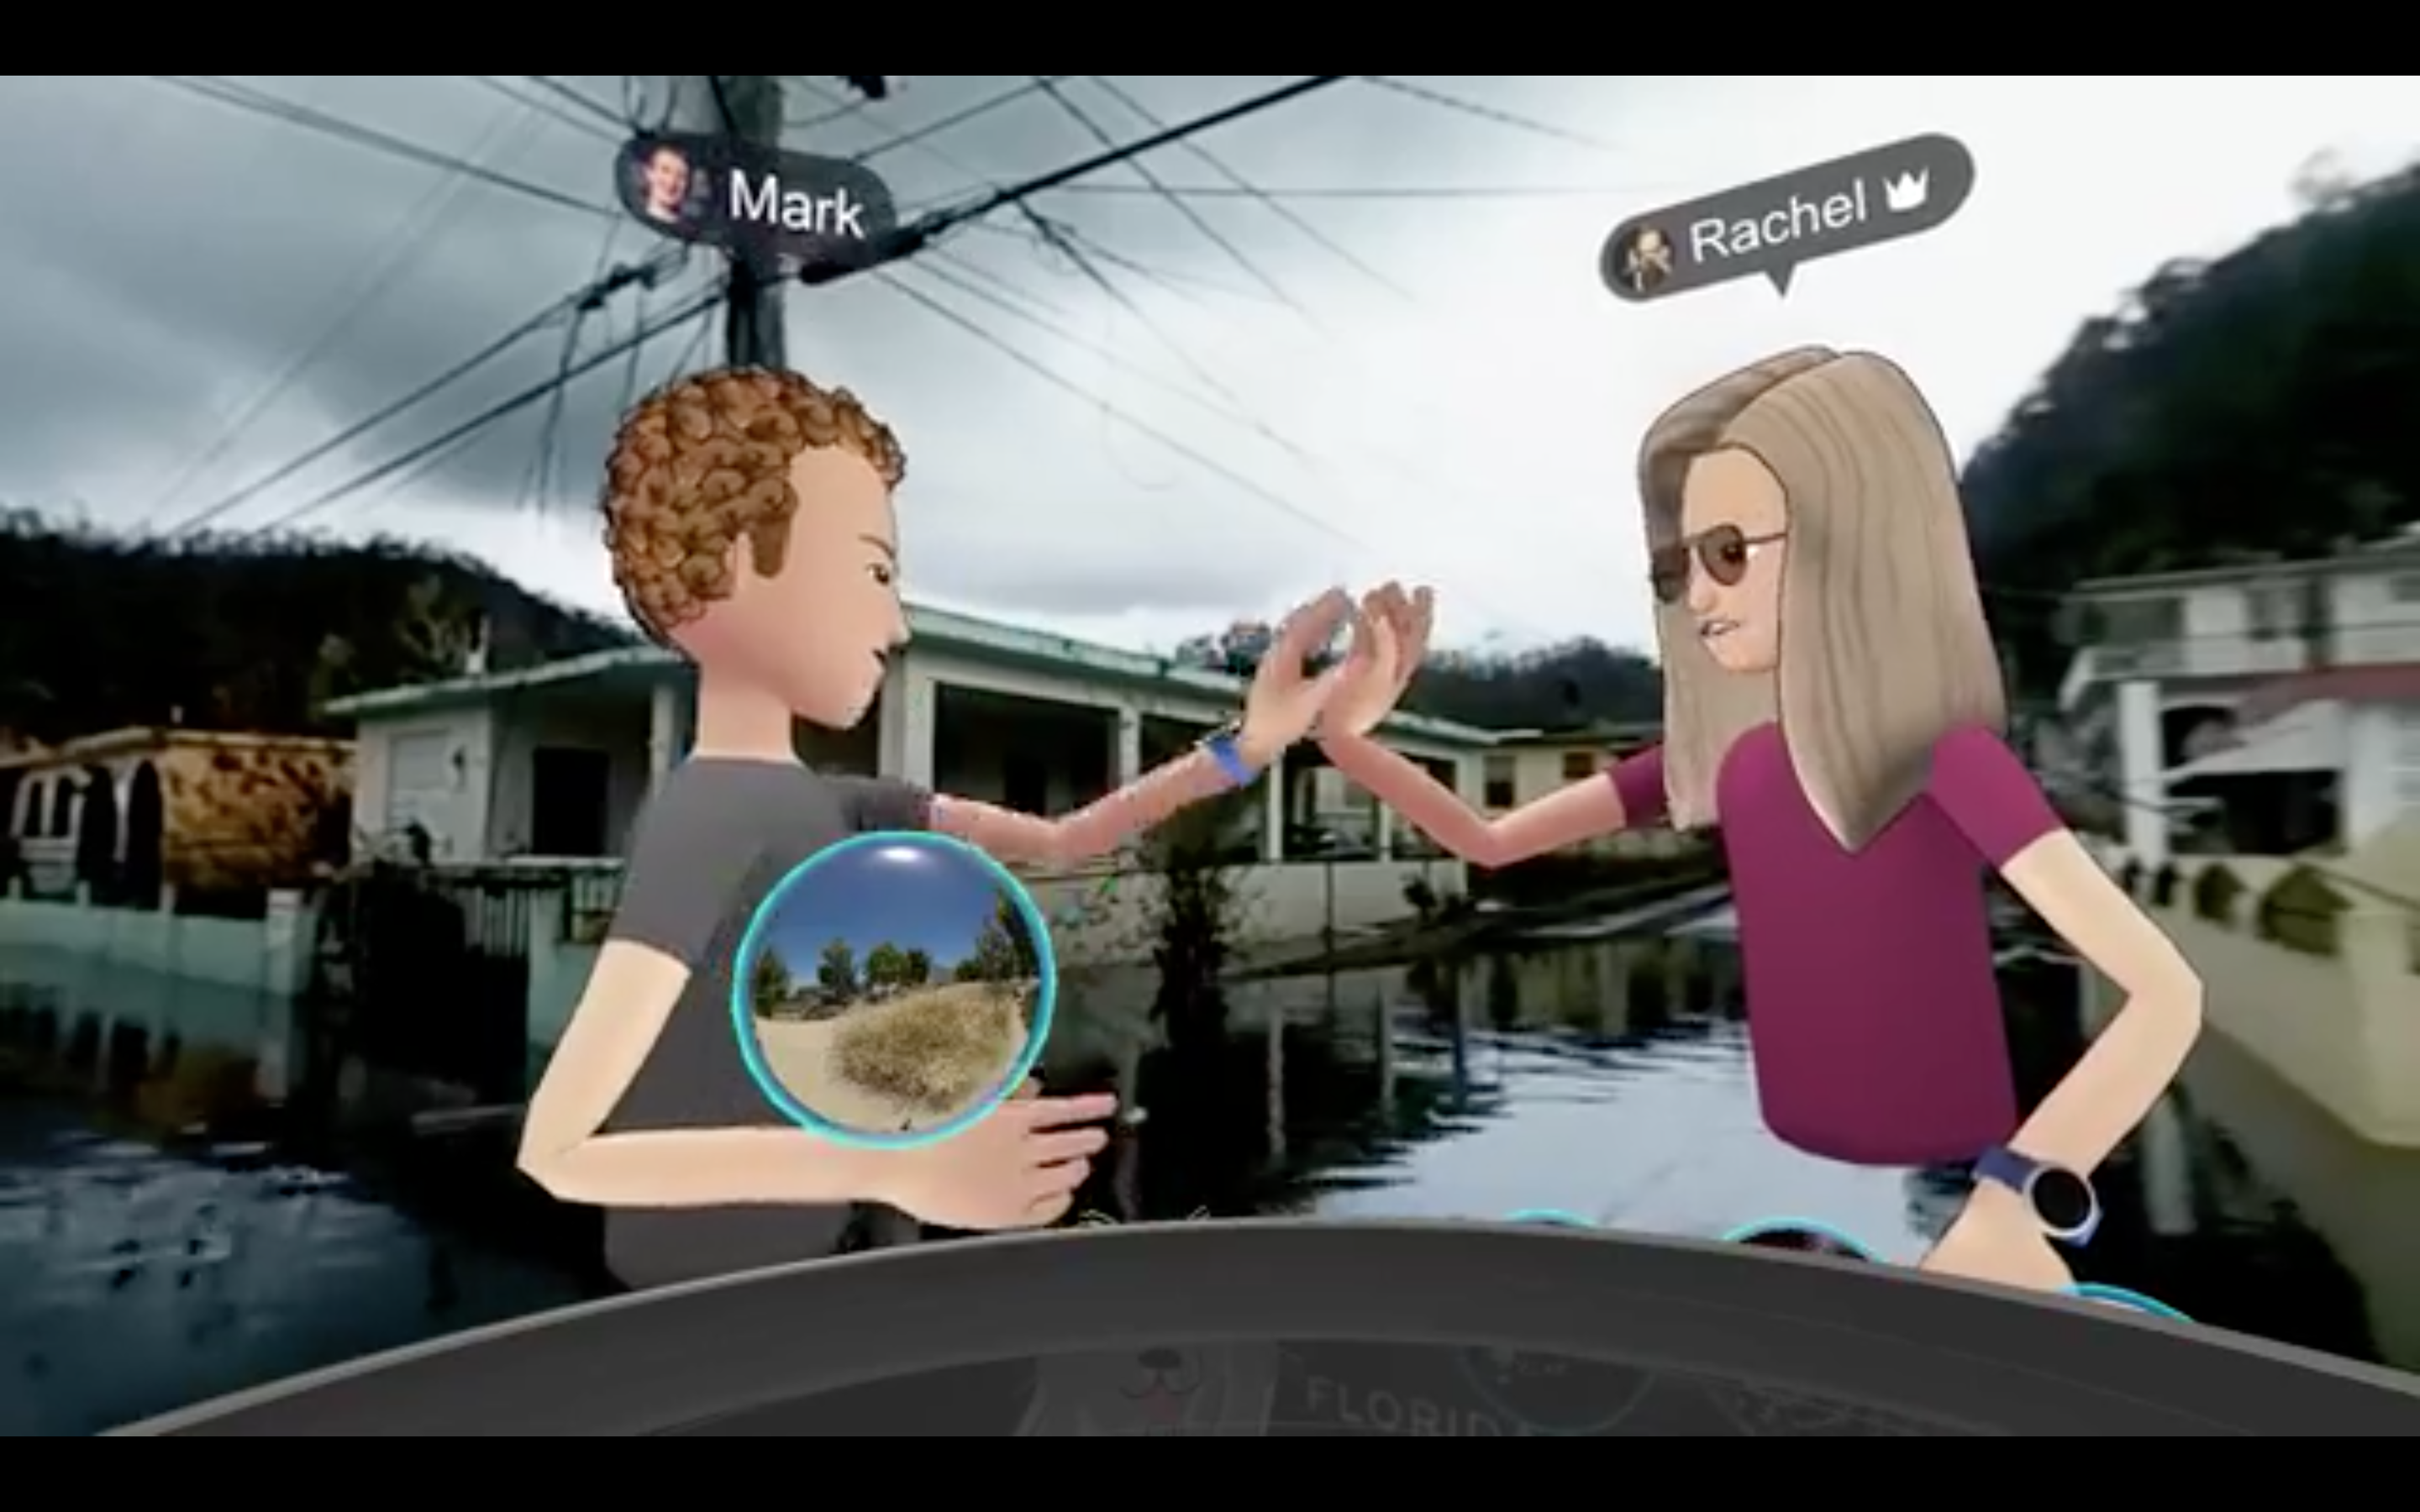 Zuckerberg high-fives Facebook colleague Rachel Franklin in their virtual reality “visit” to Puerto Rico 